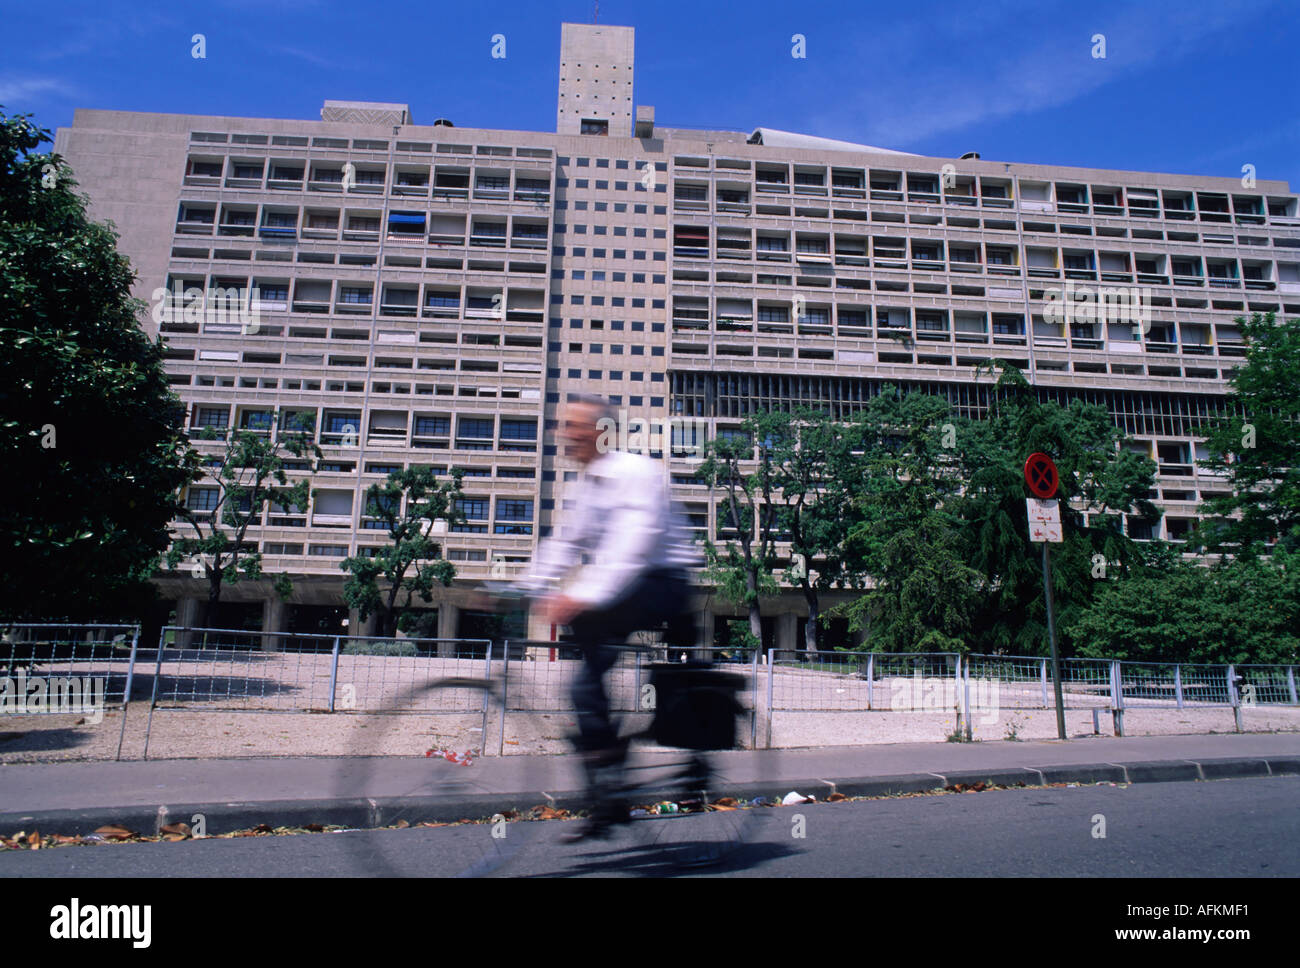 La Cité Radieuse de passage des cyclistes, un complexe résidentiel moderne conçu par Le Corbusier, à Marseille, France. Banque D'Images